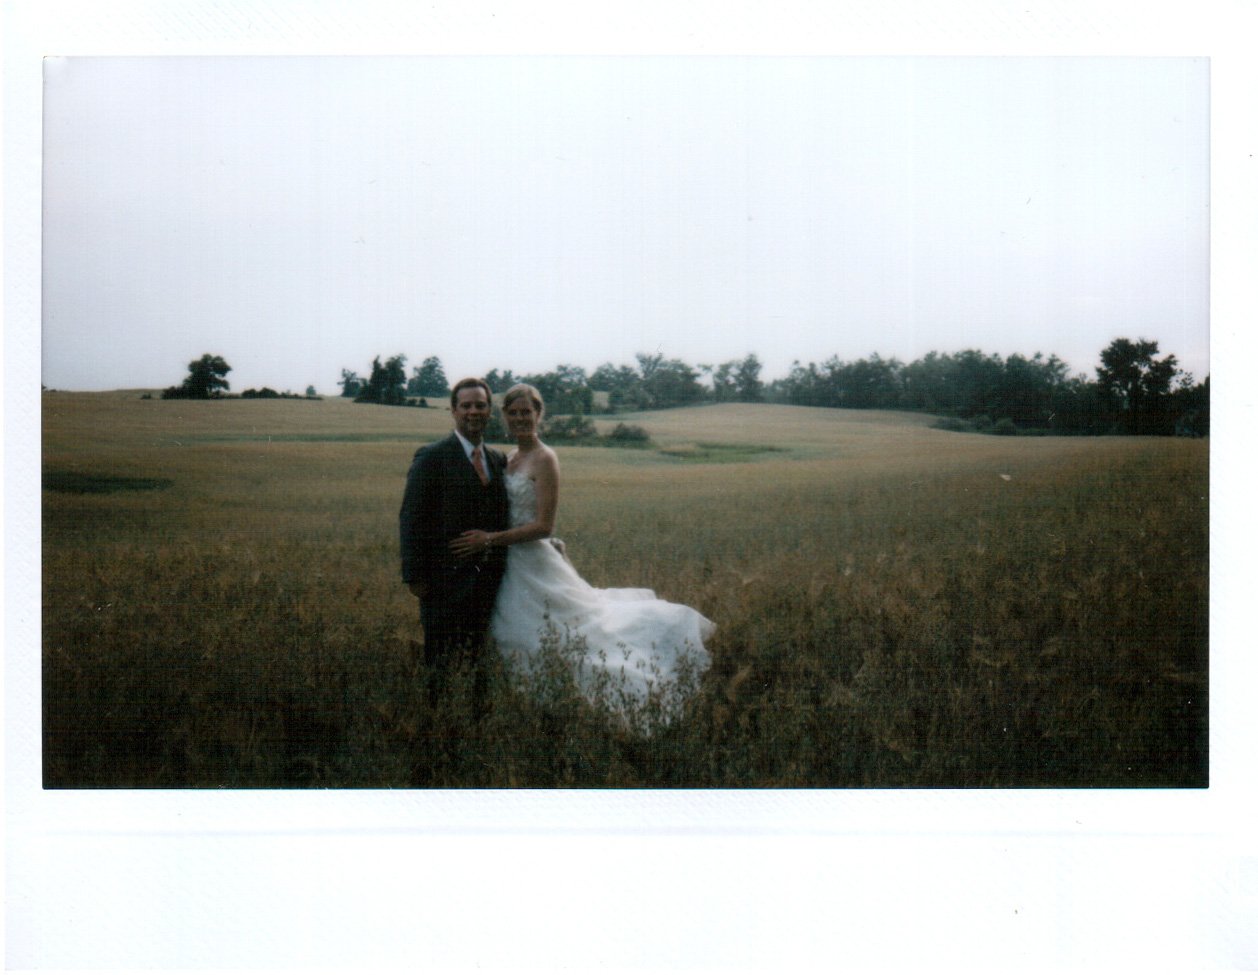 instax wedding photos | ontario farm wedding | backyard wedding near guelph